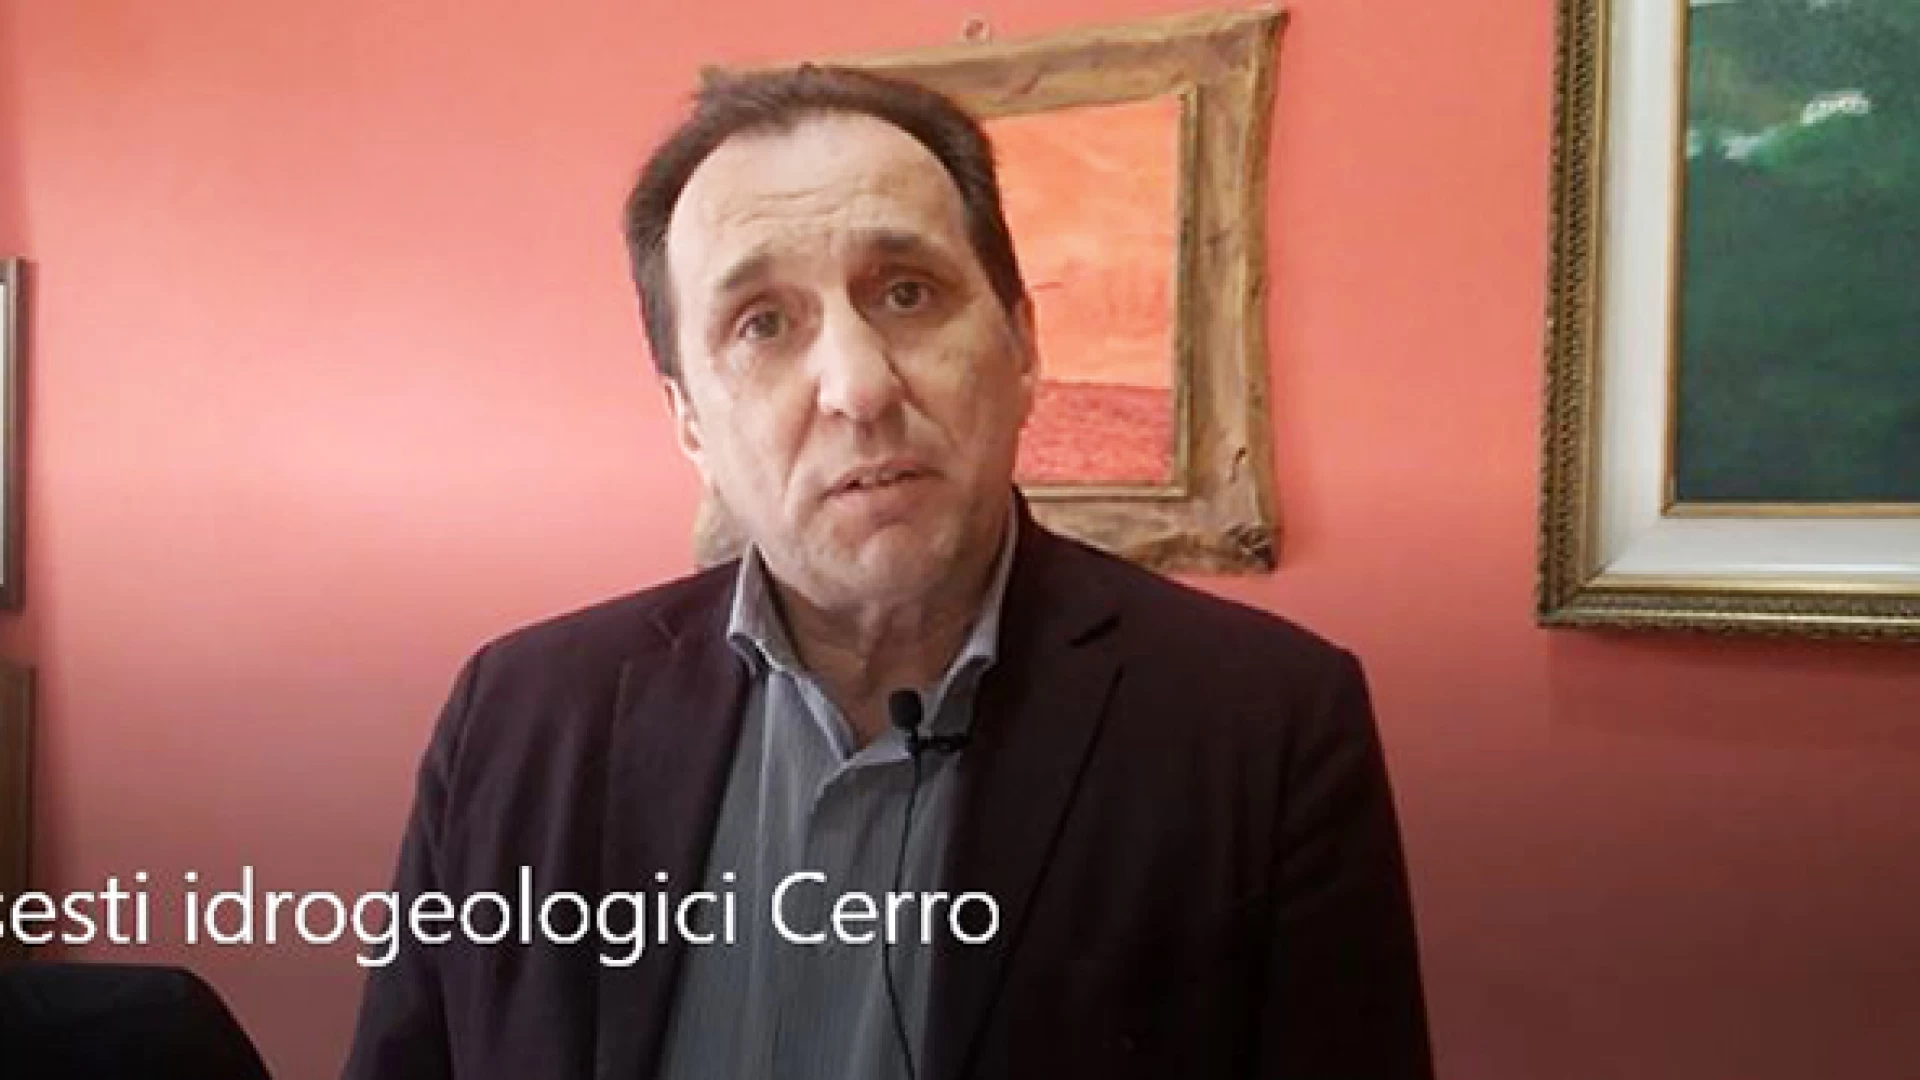 Cerro, due milioni e 600mila euro per i dissesti idrogeologici. L’intervista video all’assessore comunale Raffaele Mazzocco.